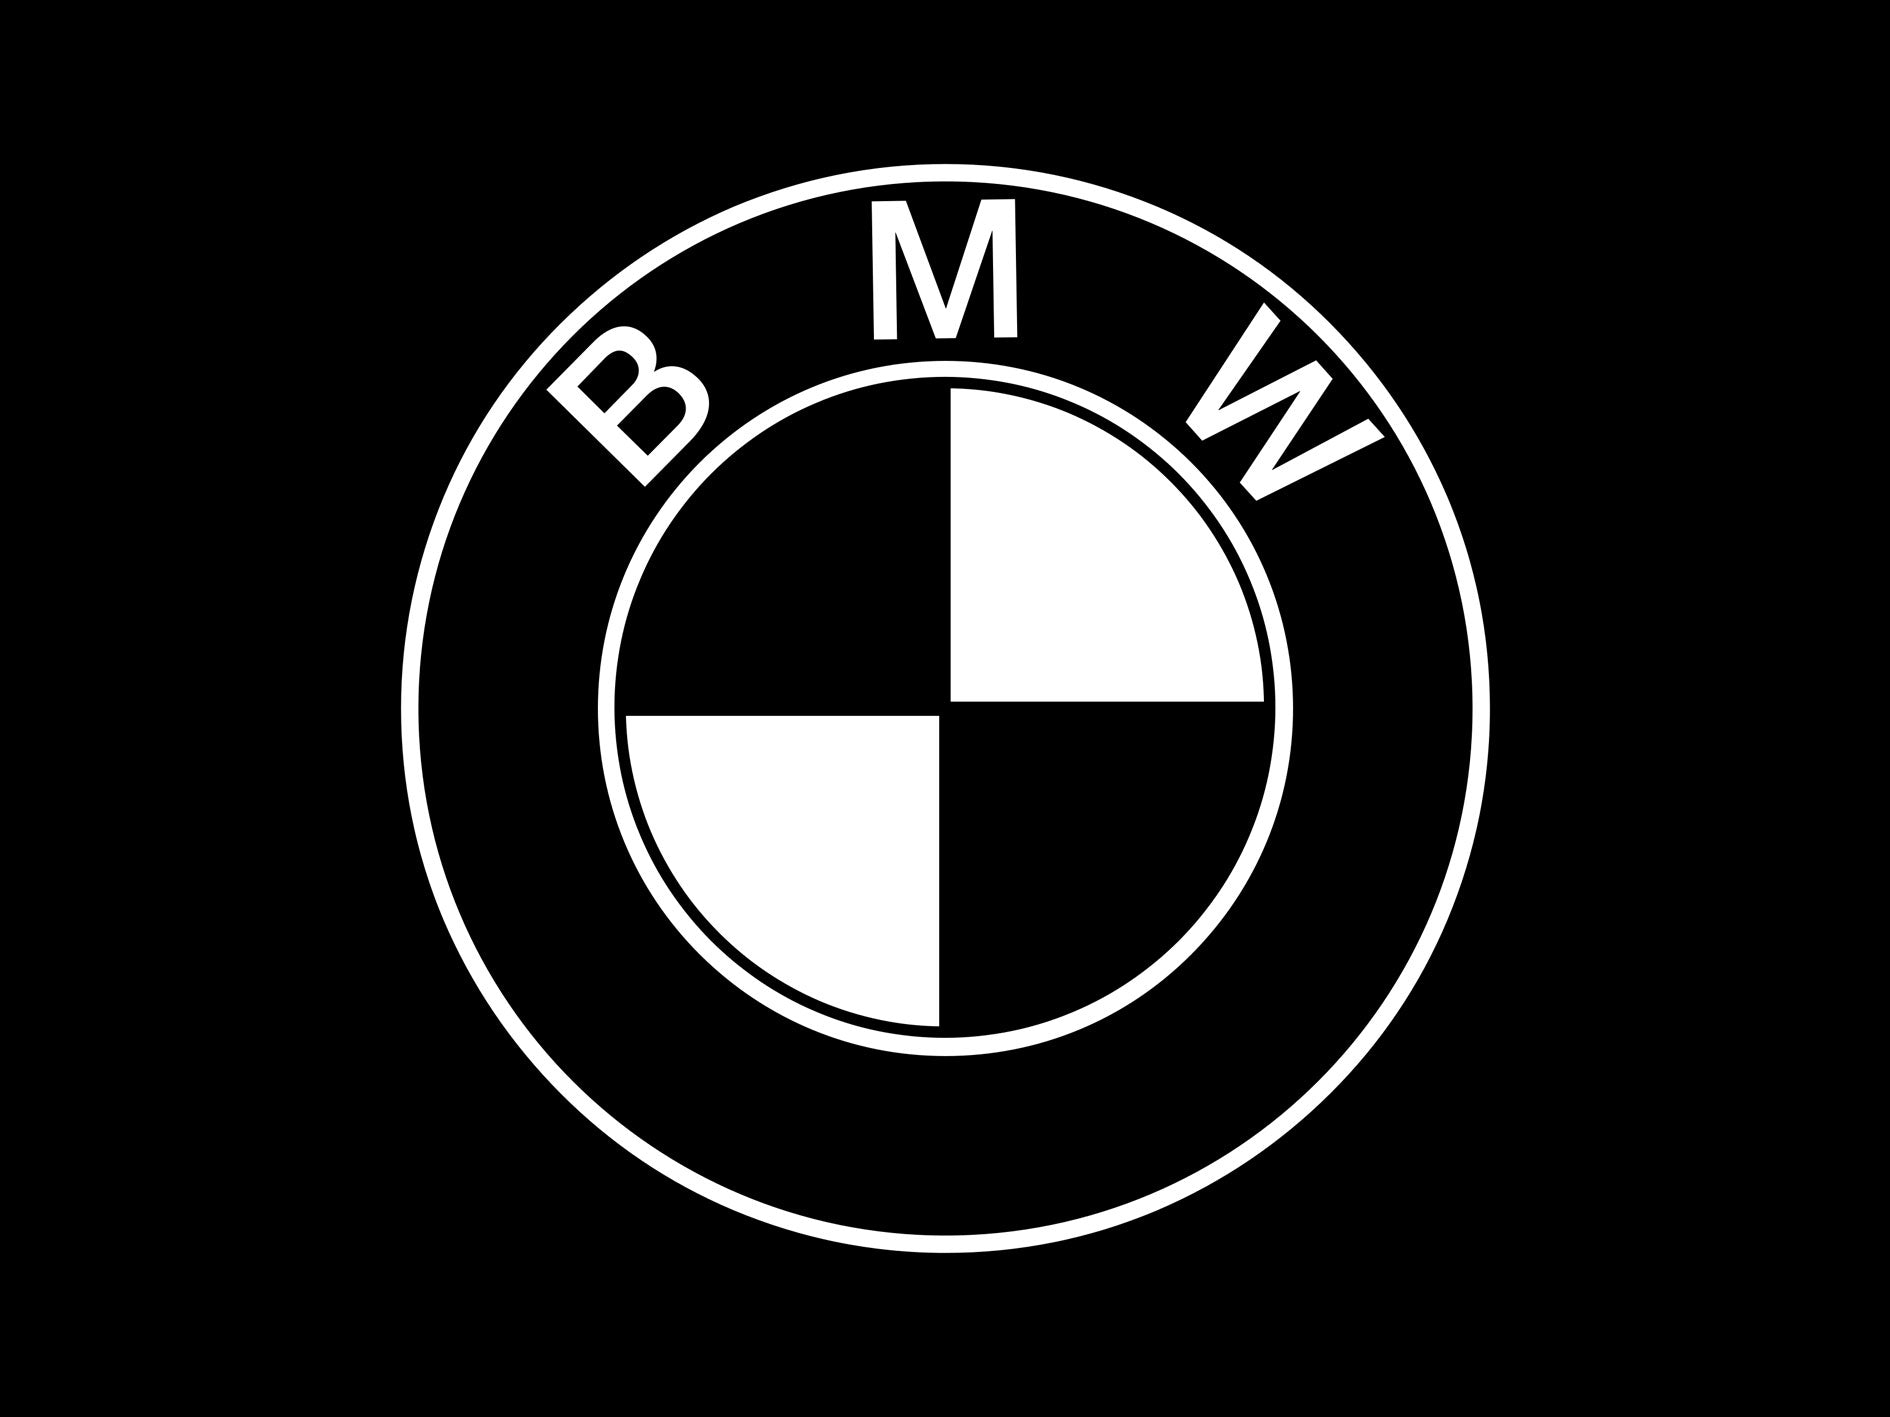 BMW logo decals, stickers